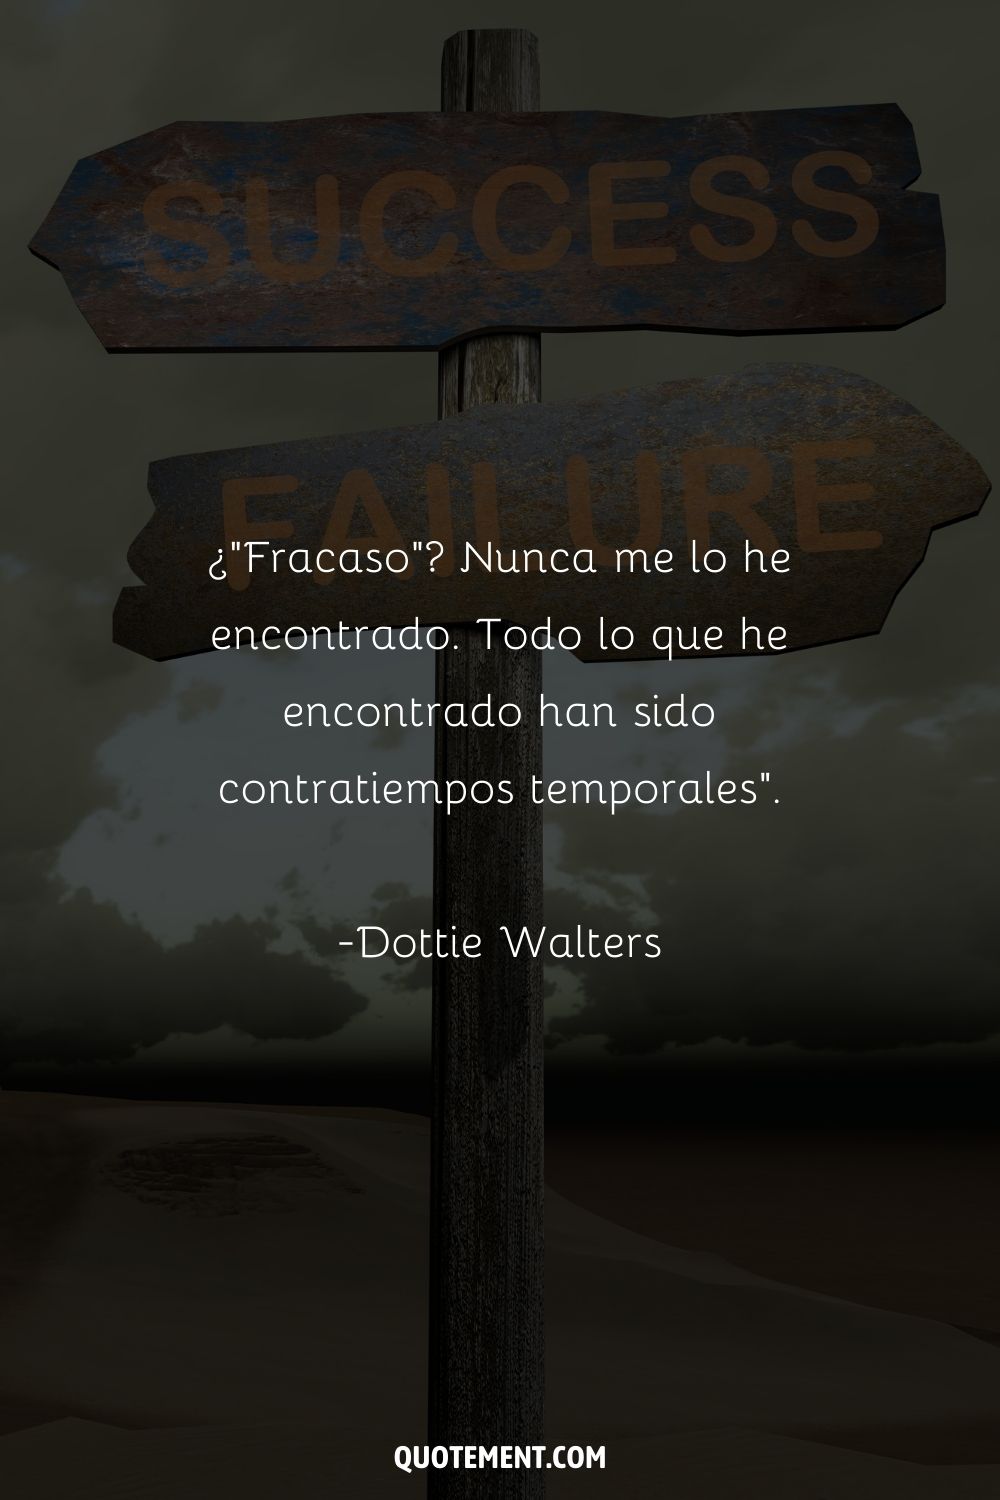 "El fracaso nunca me lo encontré. Todo lo que encontré fueron contratiempos temporales". - Dottie Walters